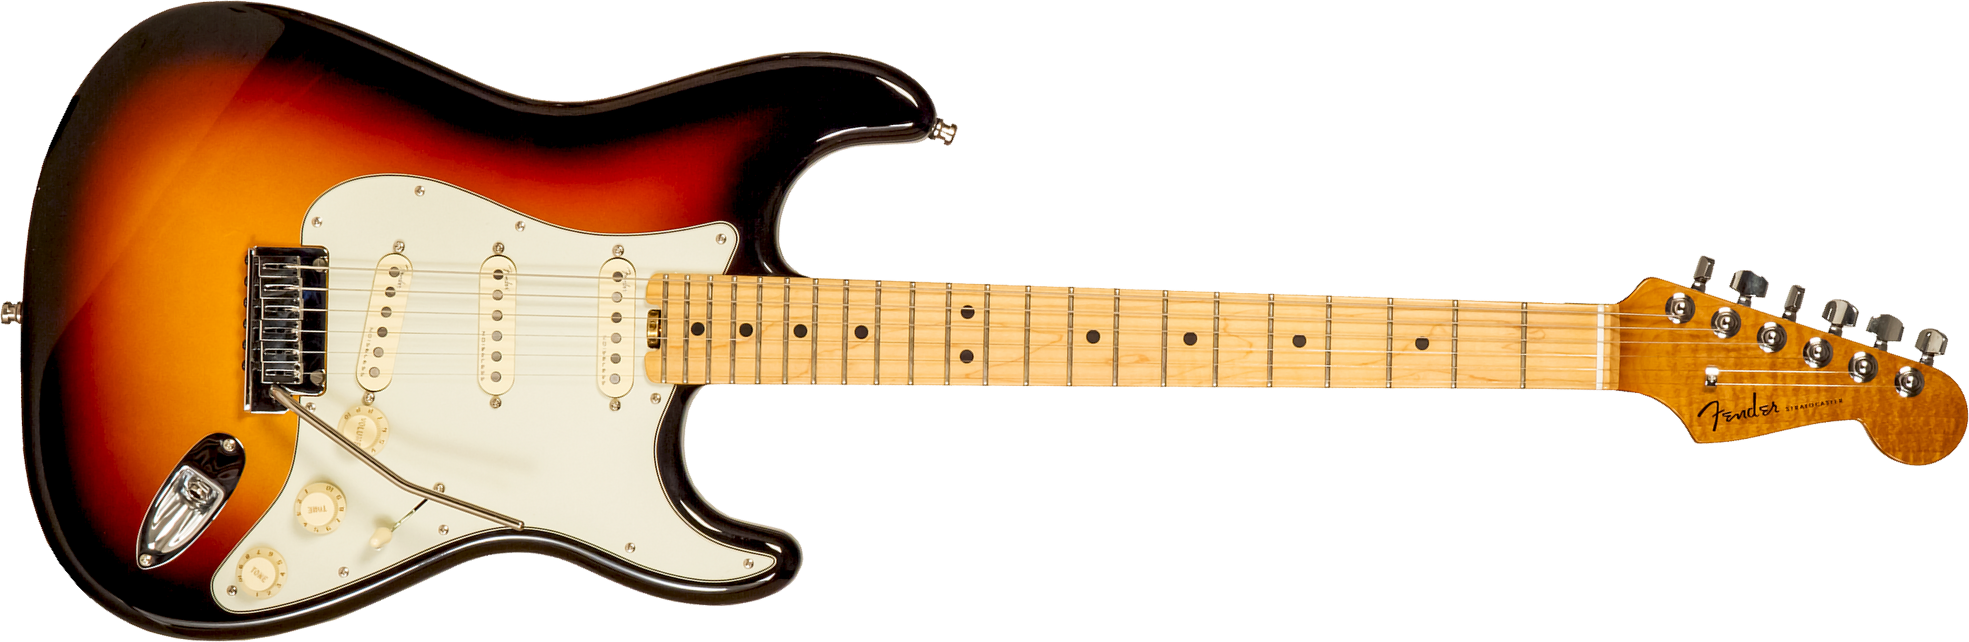 Fender Custom Shop Strat Elite 3s Trem Mn #xn15588 - Nos 3-color Sunburst - Guitarra eléctrica con forma de str. - Main picture